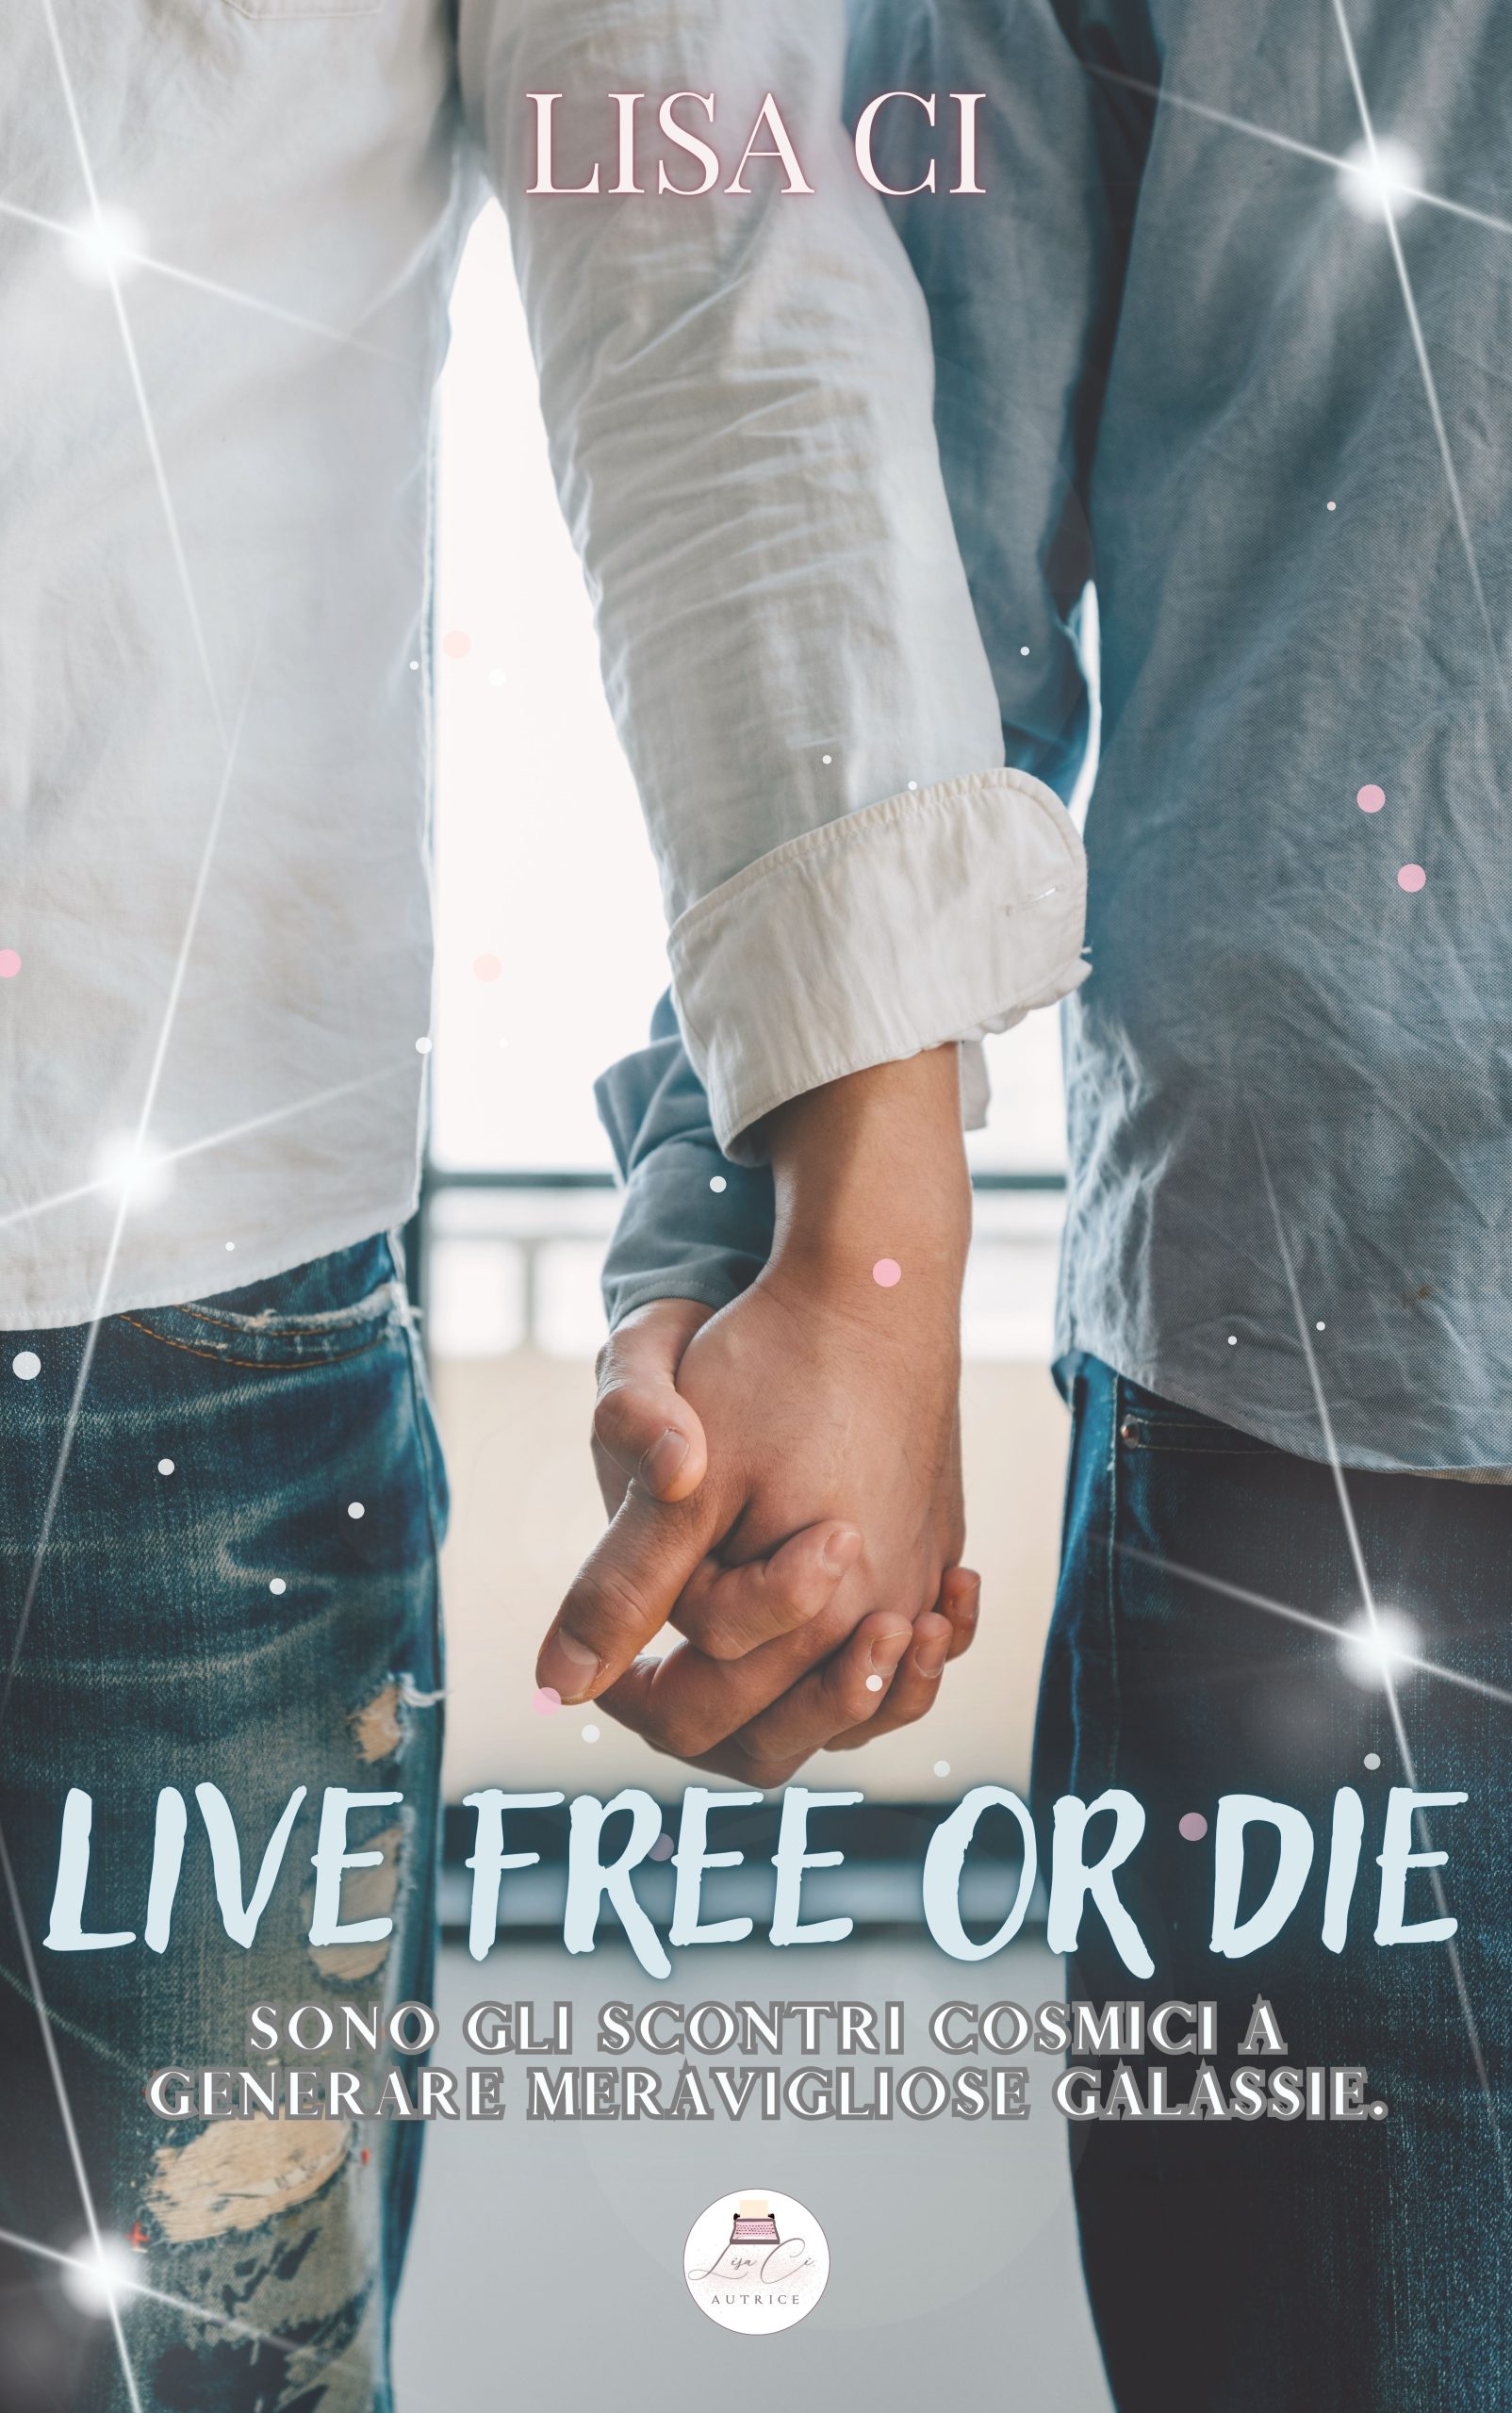 Segnalazione di uscita “Live free or die” di Lisa C